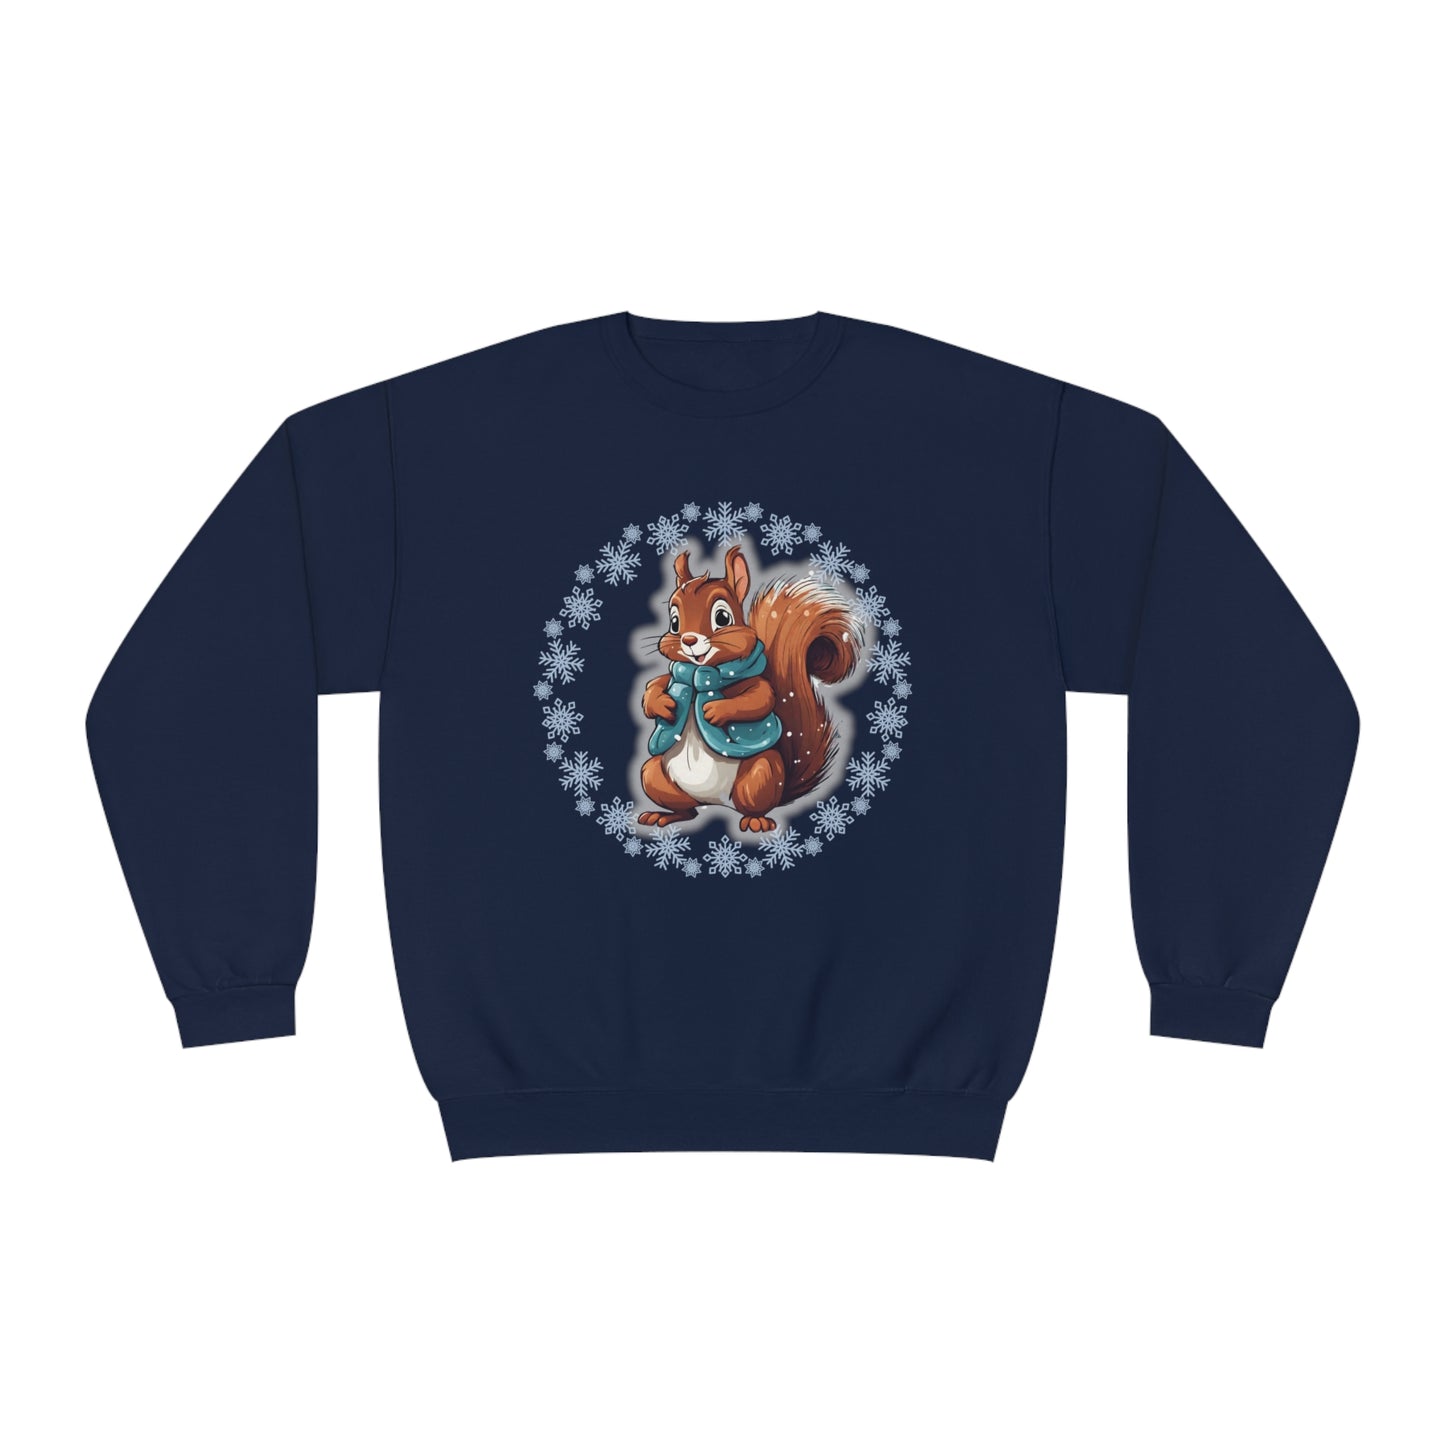 Nutty Squirrel Unisex NuBlend® Crewneck Sweatshirt